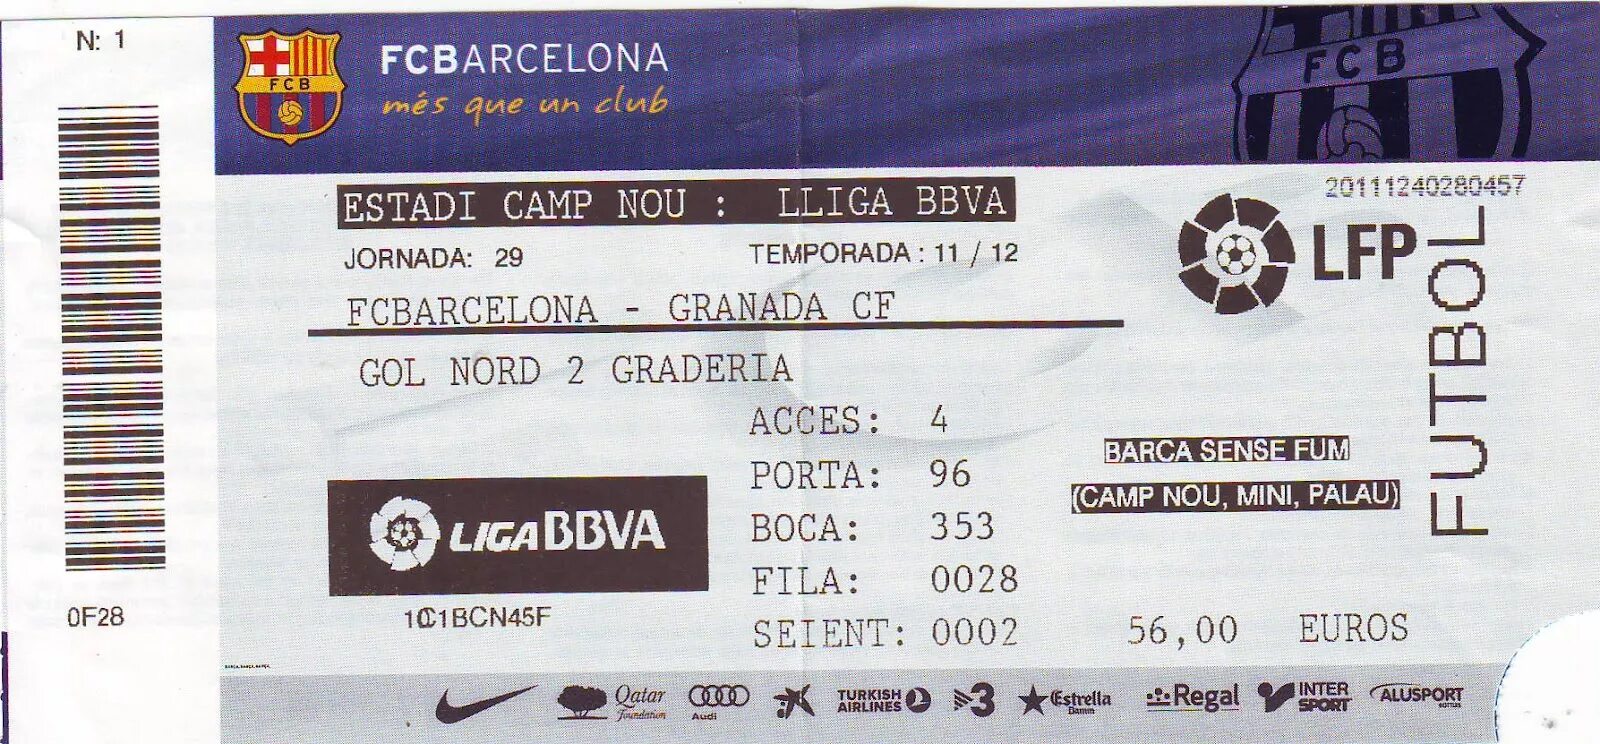 Билеты на матч барселоны. Билет на матч Барселоны. Билет на матч Барселоны на Камп ноу. Электронный билет на футбол Барселоны на Камп ноу. Football Match ticket.